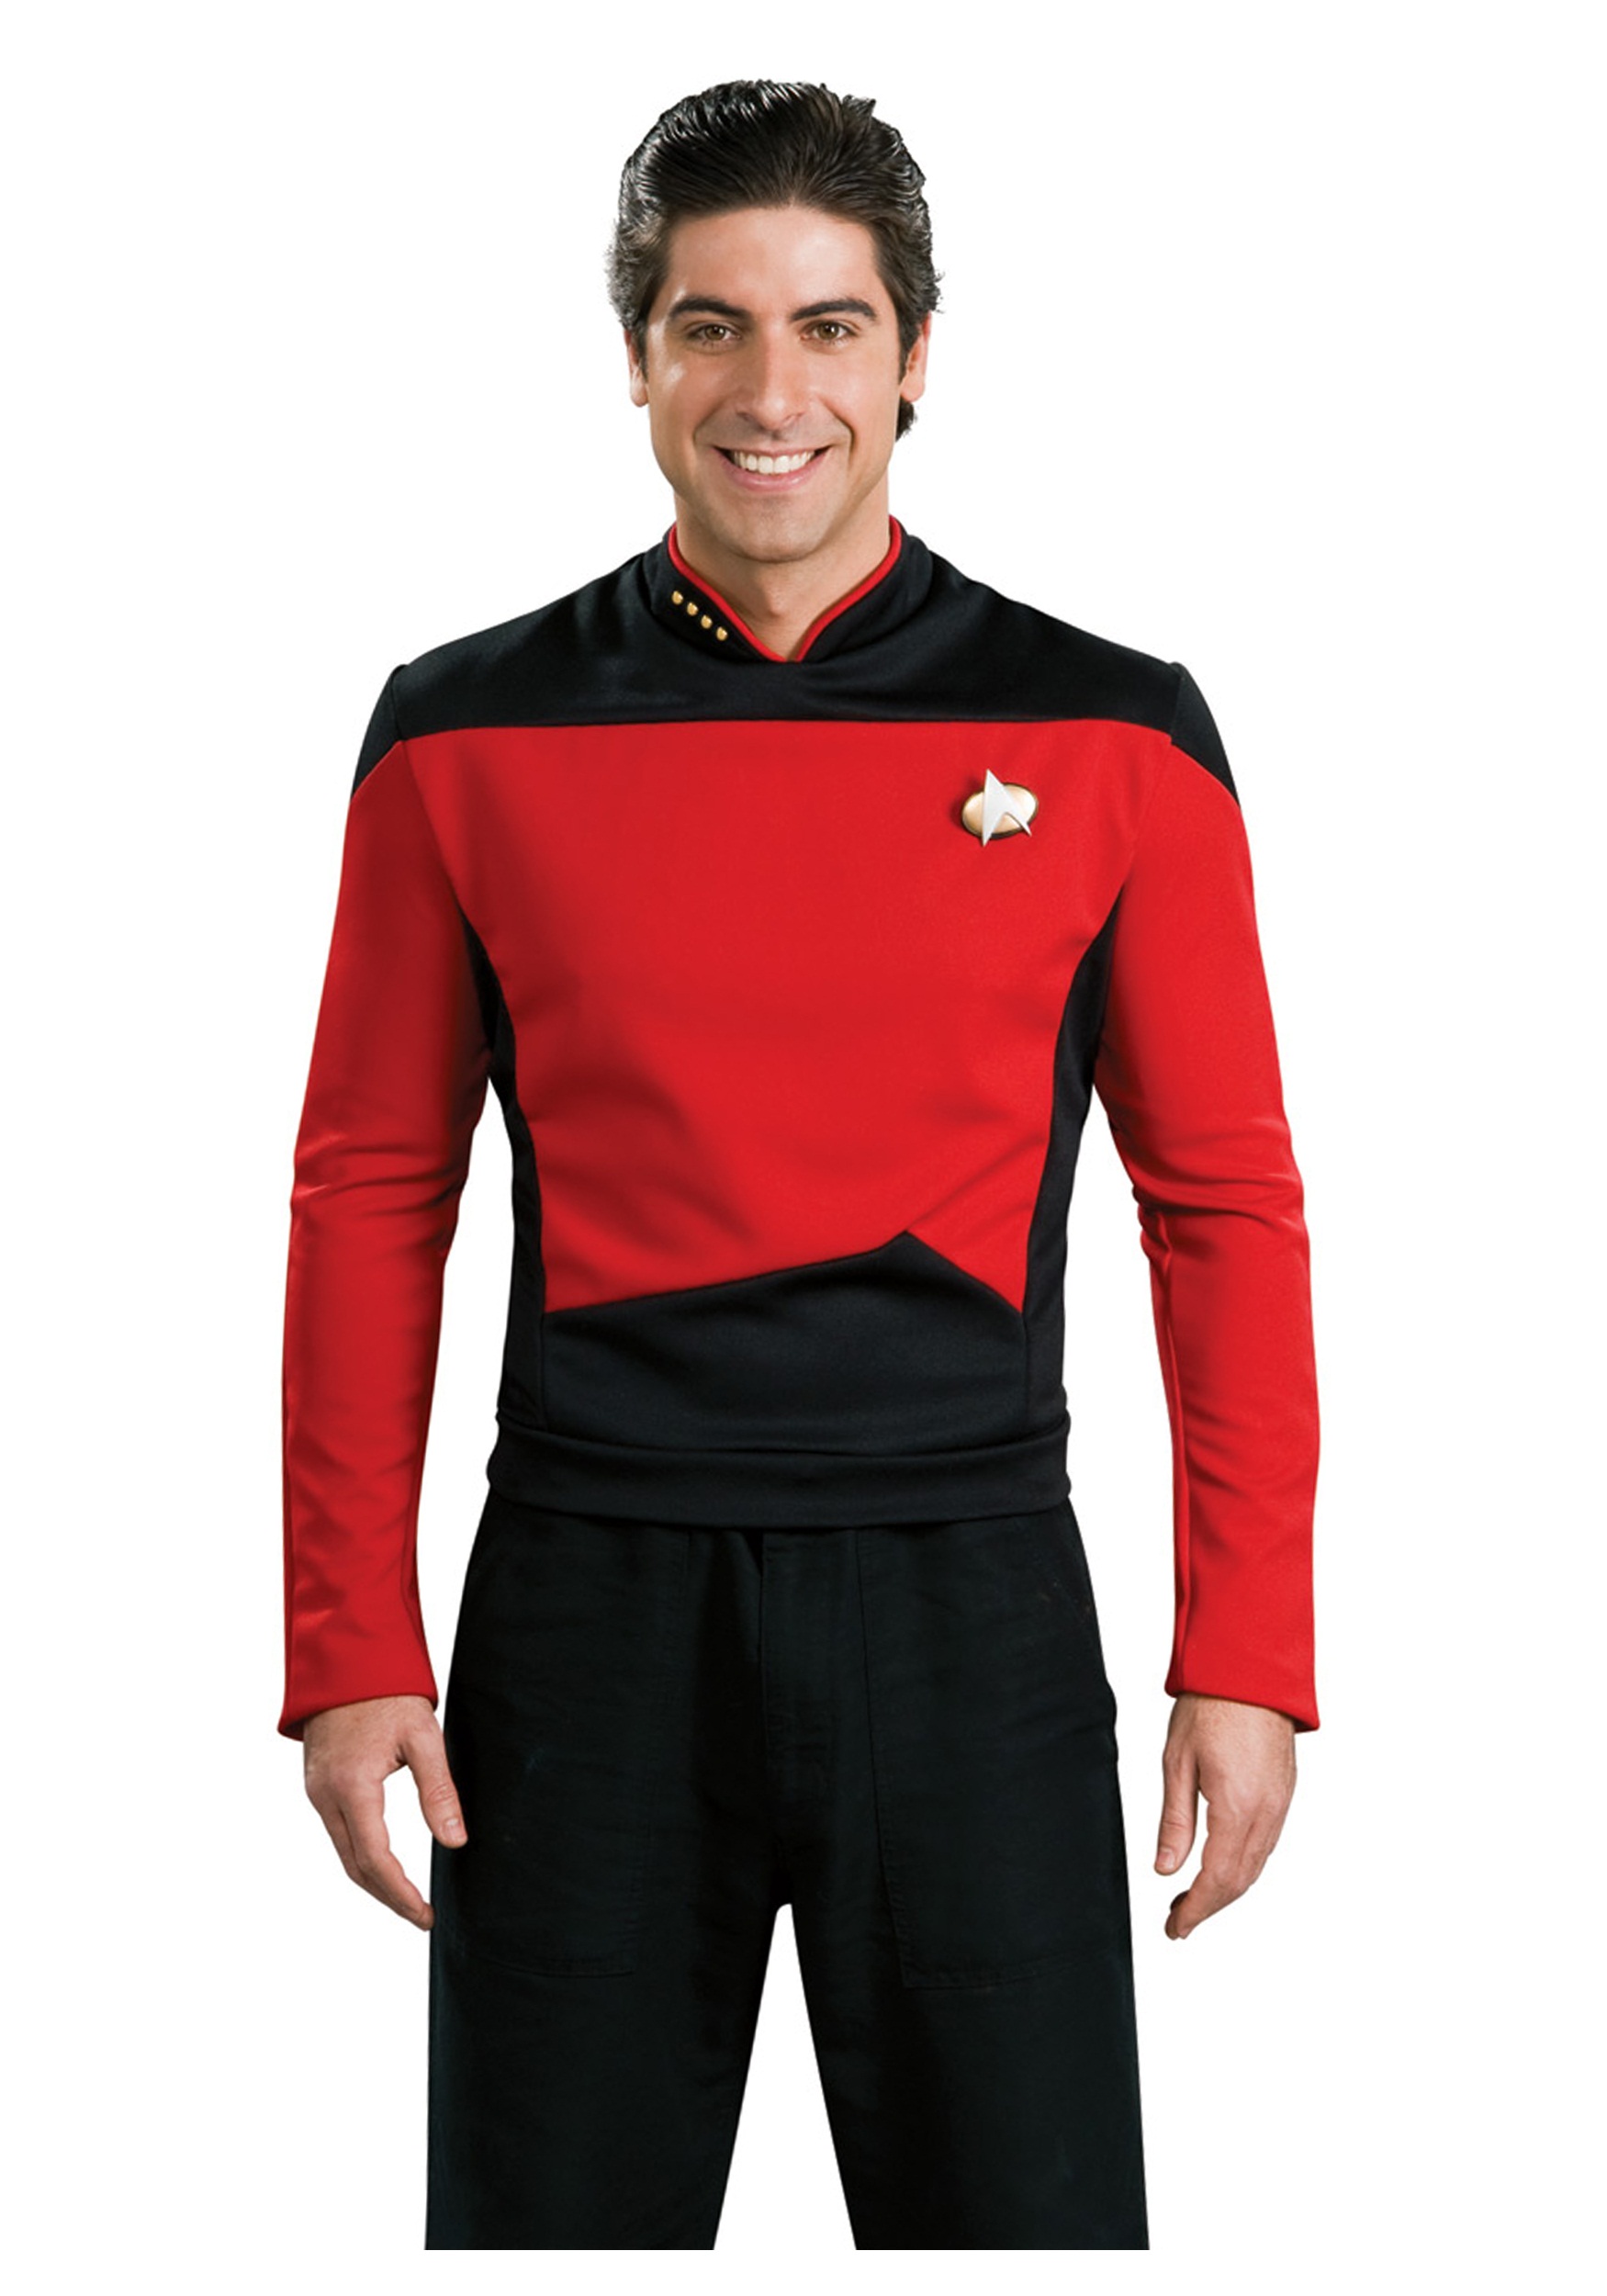 Star Trek: Tng Adult Deluxe Commander Uniform Costume BA0